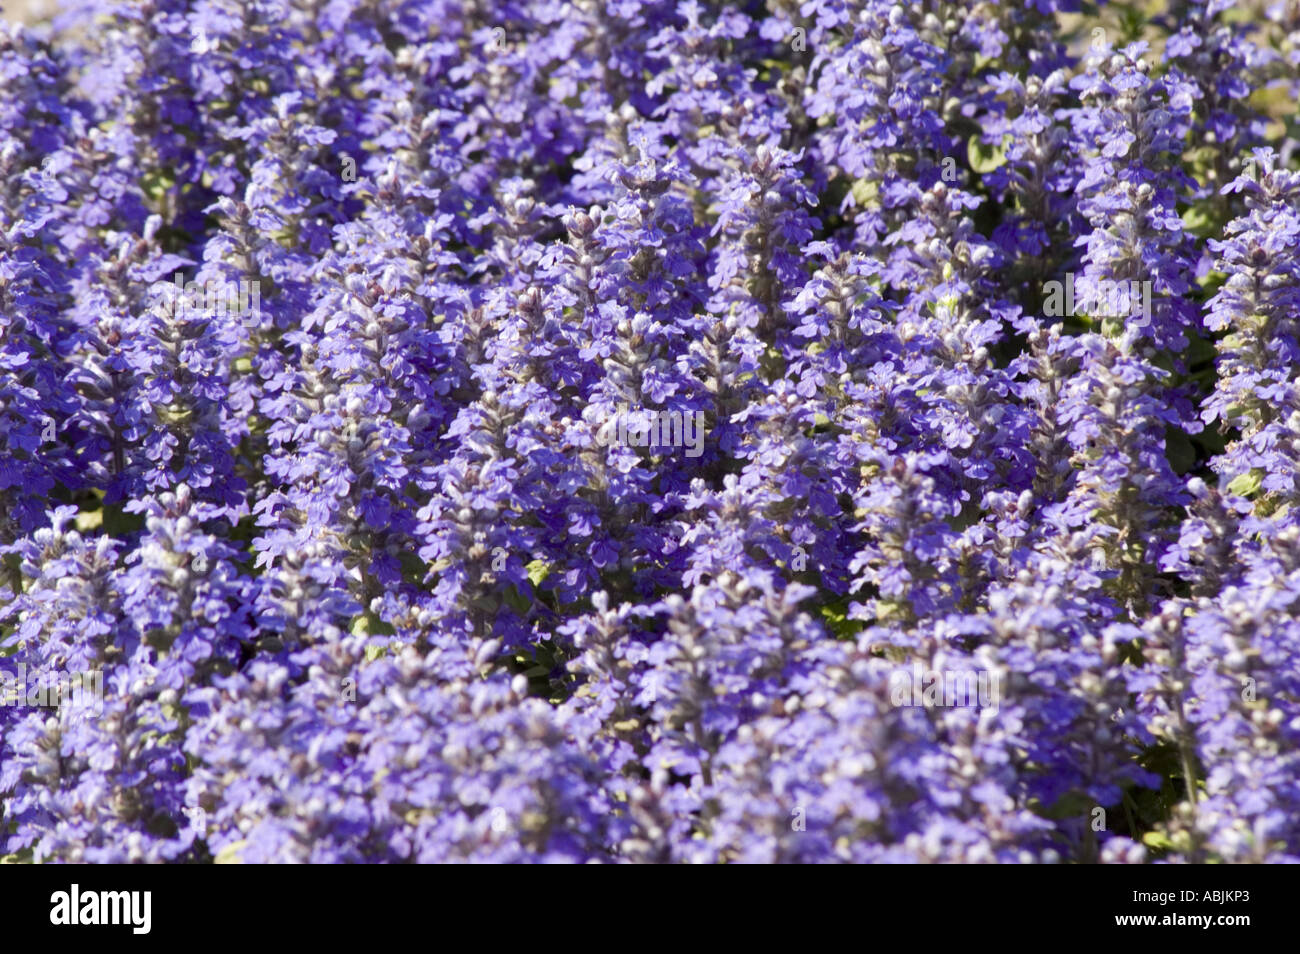 Carpet of violet flowers of Lamiaceae Ajuga reptans Veriegata Stock Photo